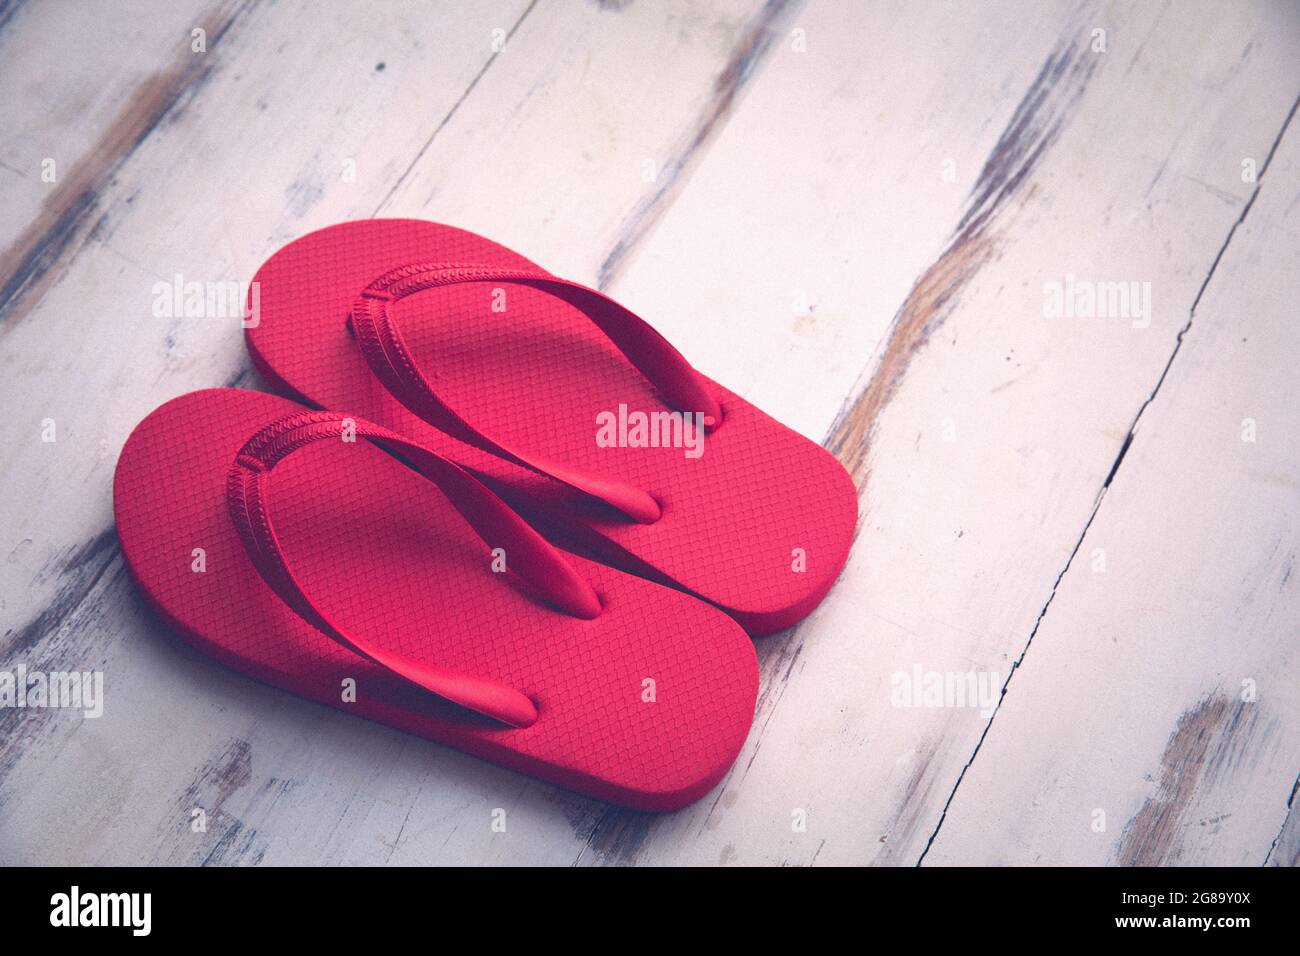 Sandalias rojas fotografías e imágenes de alta resolución - Página 10 -  Alamy